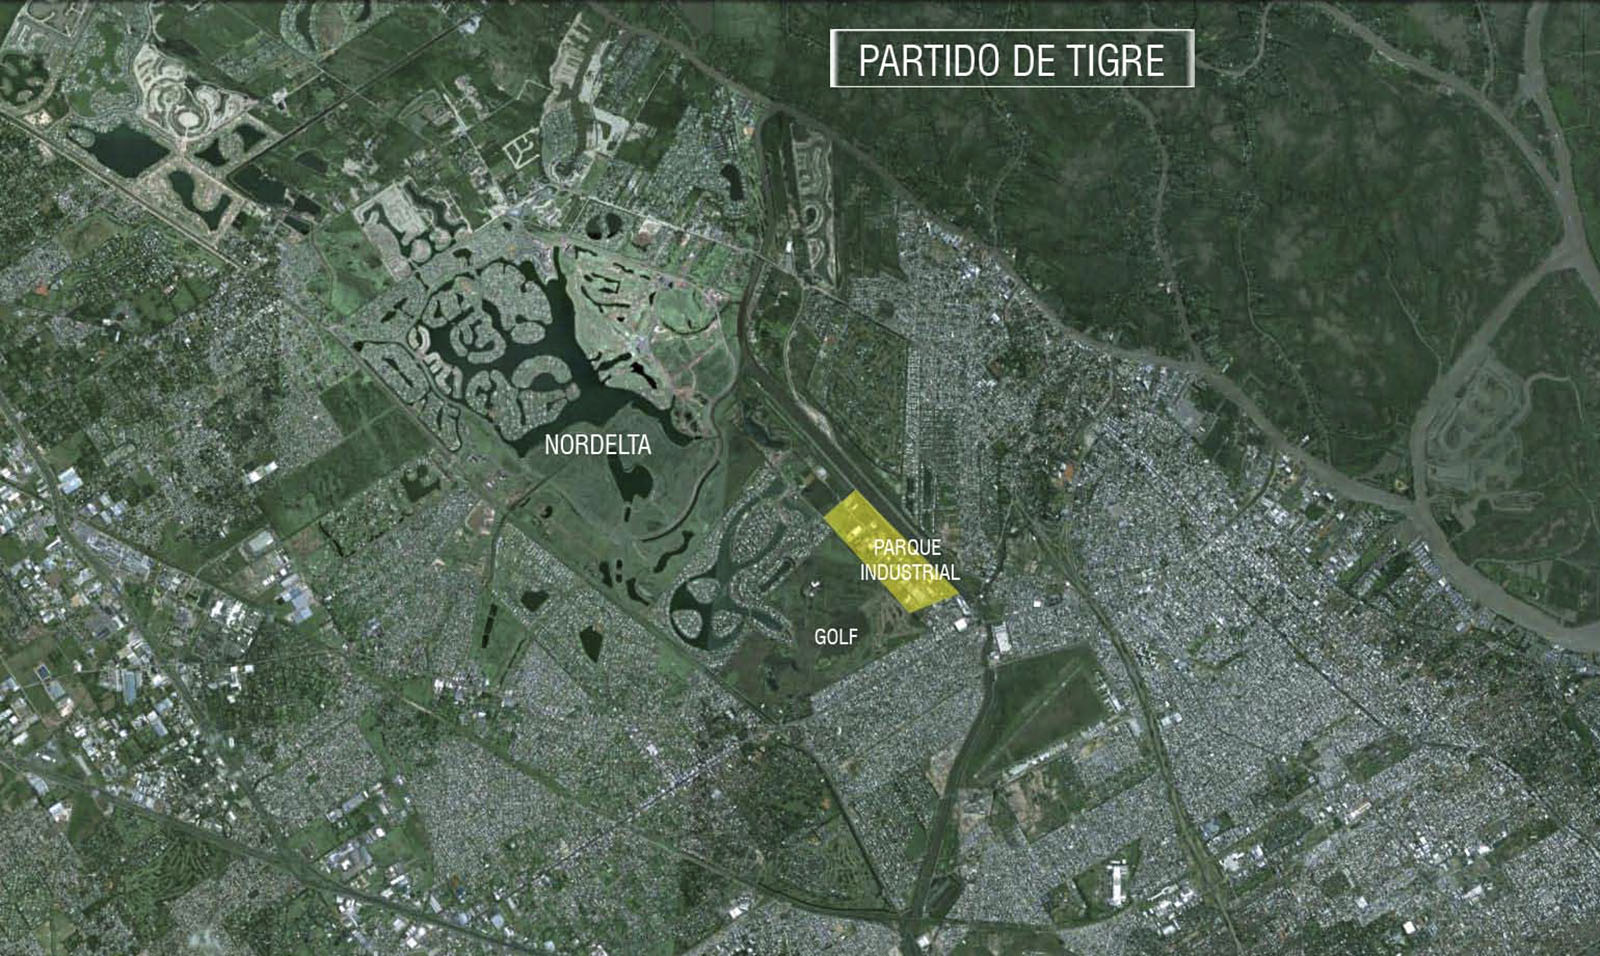 Plano de implantación de fabrica en Parque industrial tigre, Buenos Aires